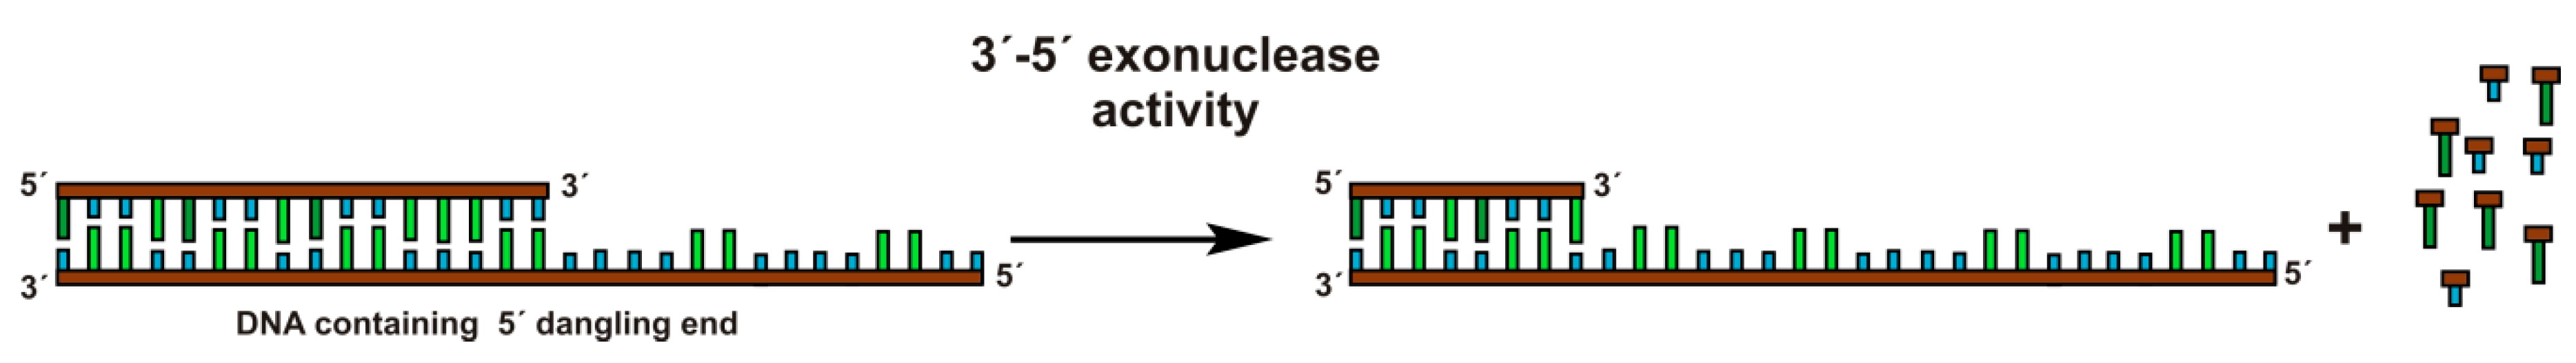 3' - 5' exonuclease 活性